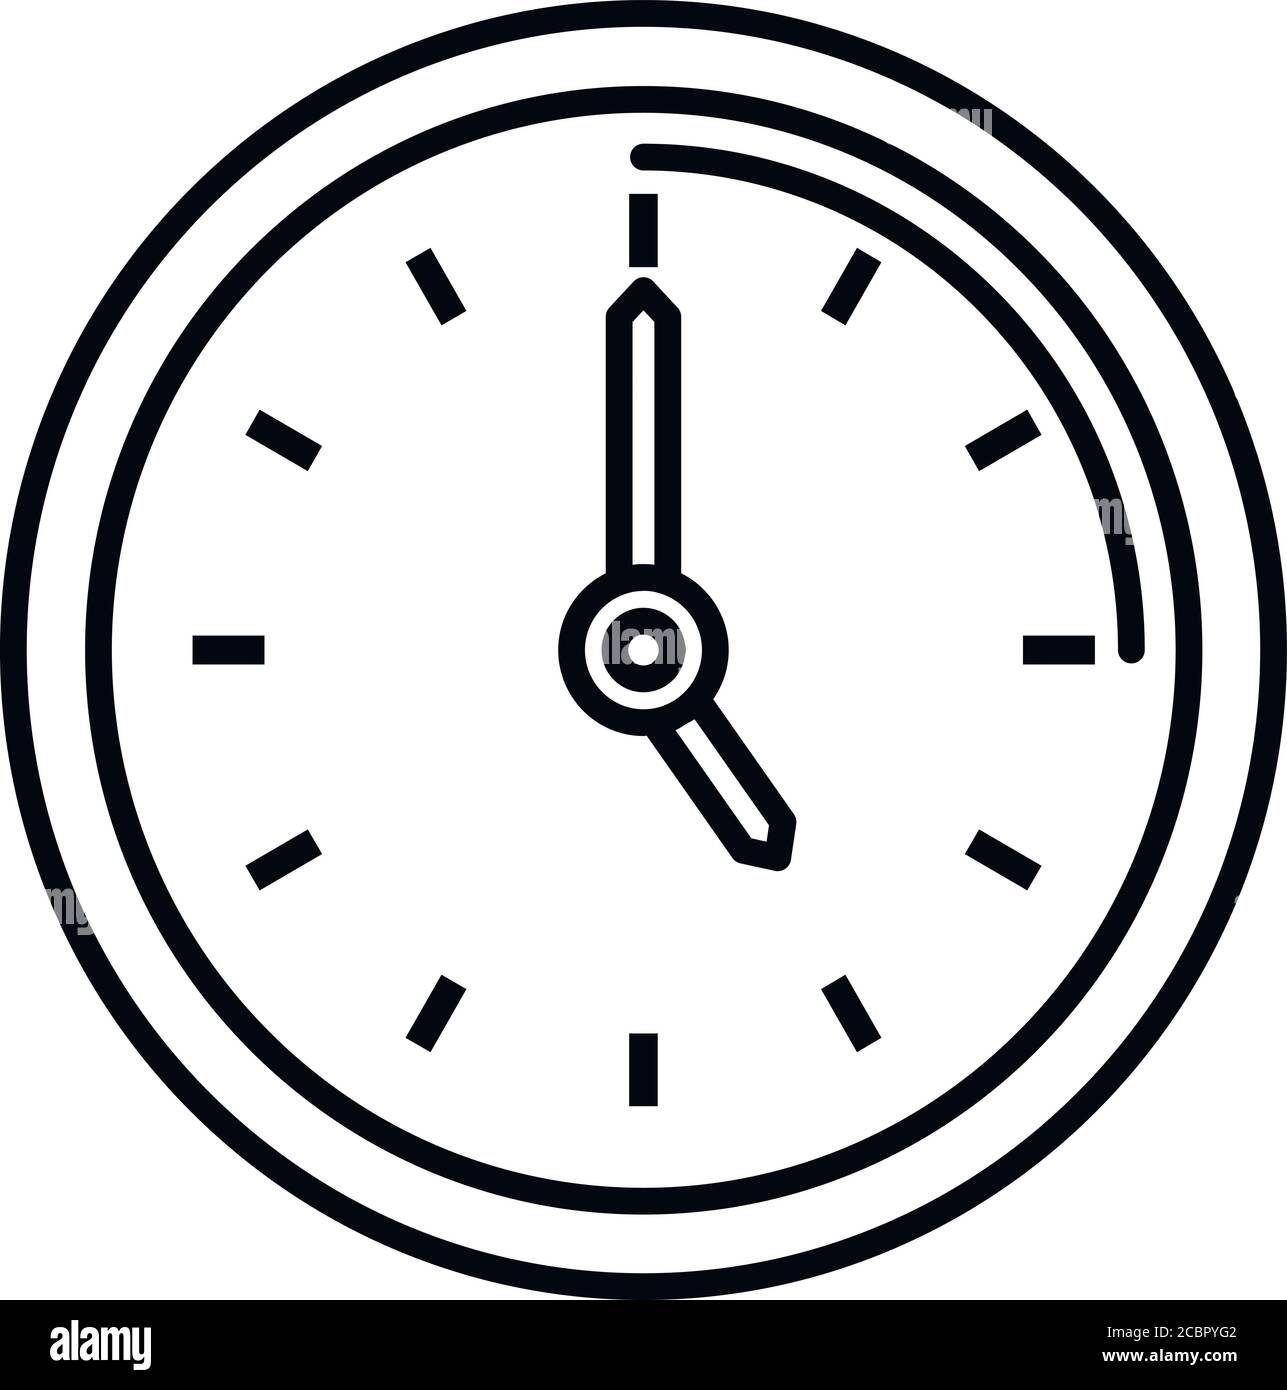 Symbol für die Reparatur einer Bürowanduhr. Umriss Büro Wand Uhr Reparatur Vektor-Symbol für Web-Design isoliert auf weißem Hintergrund Stock Vektor